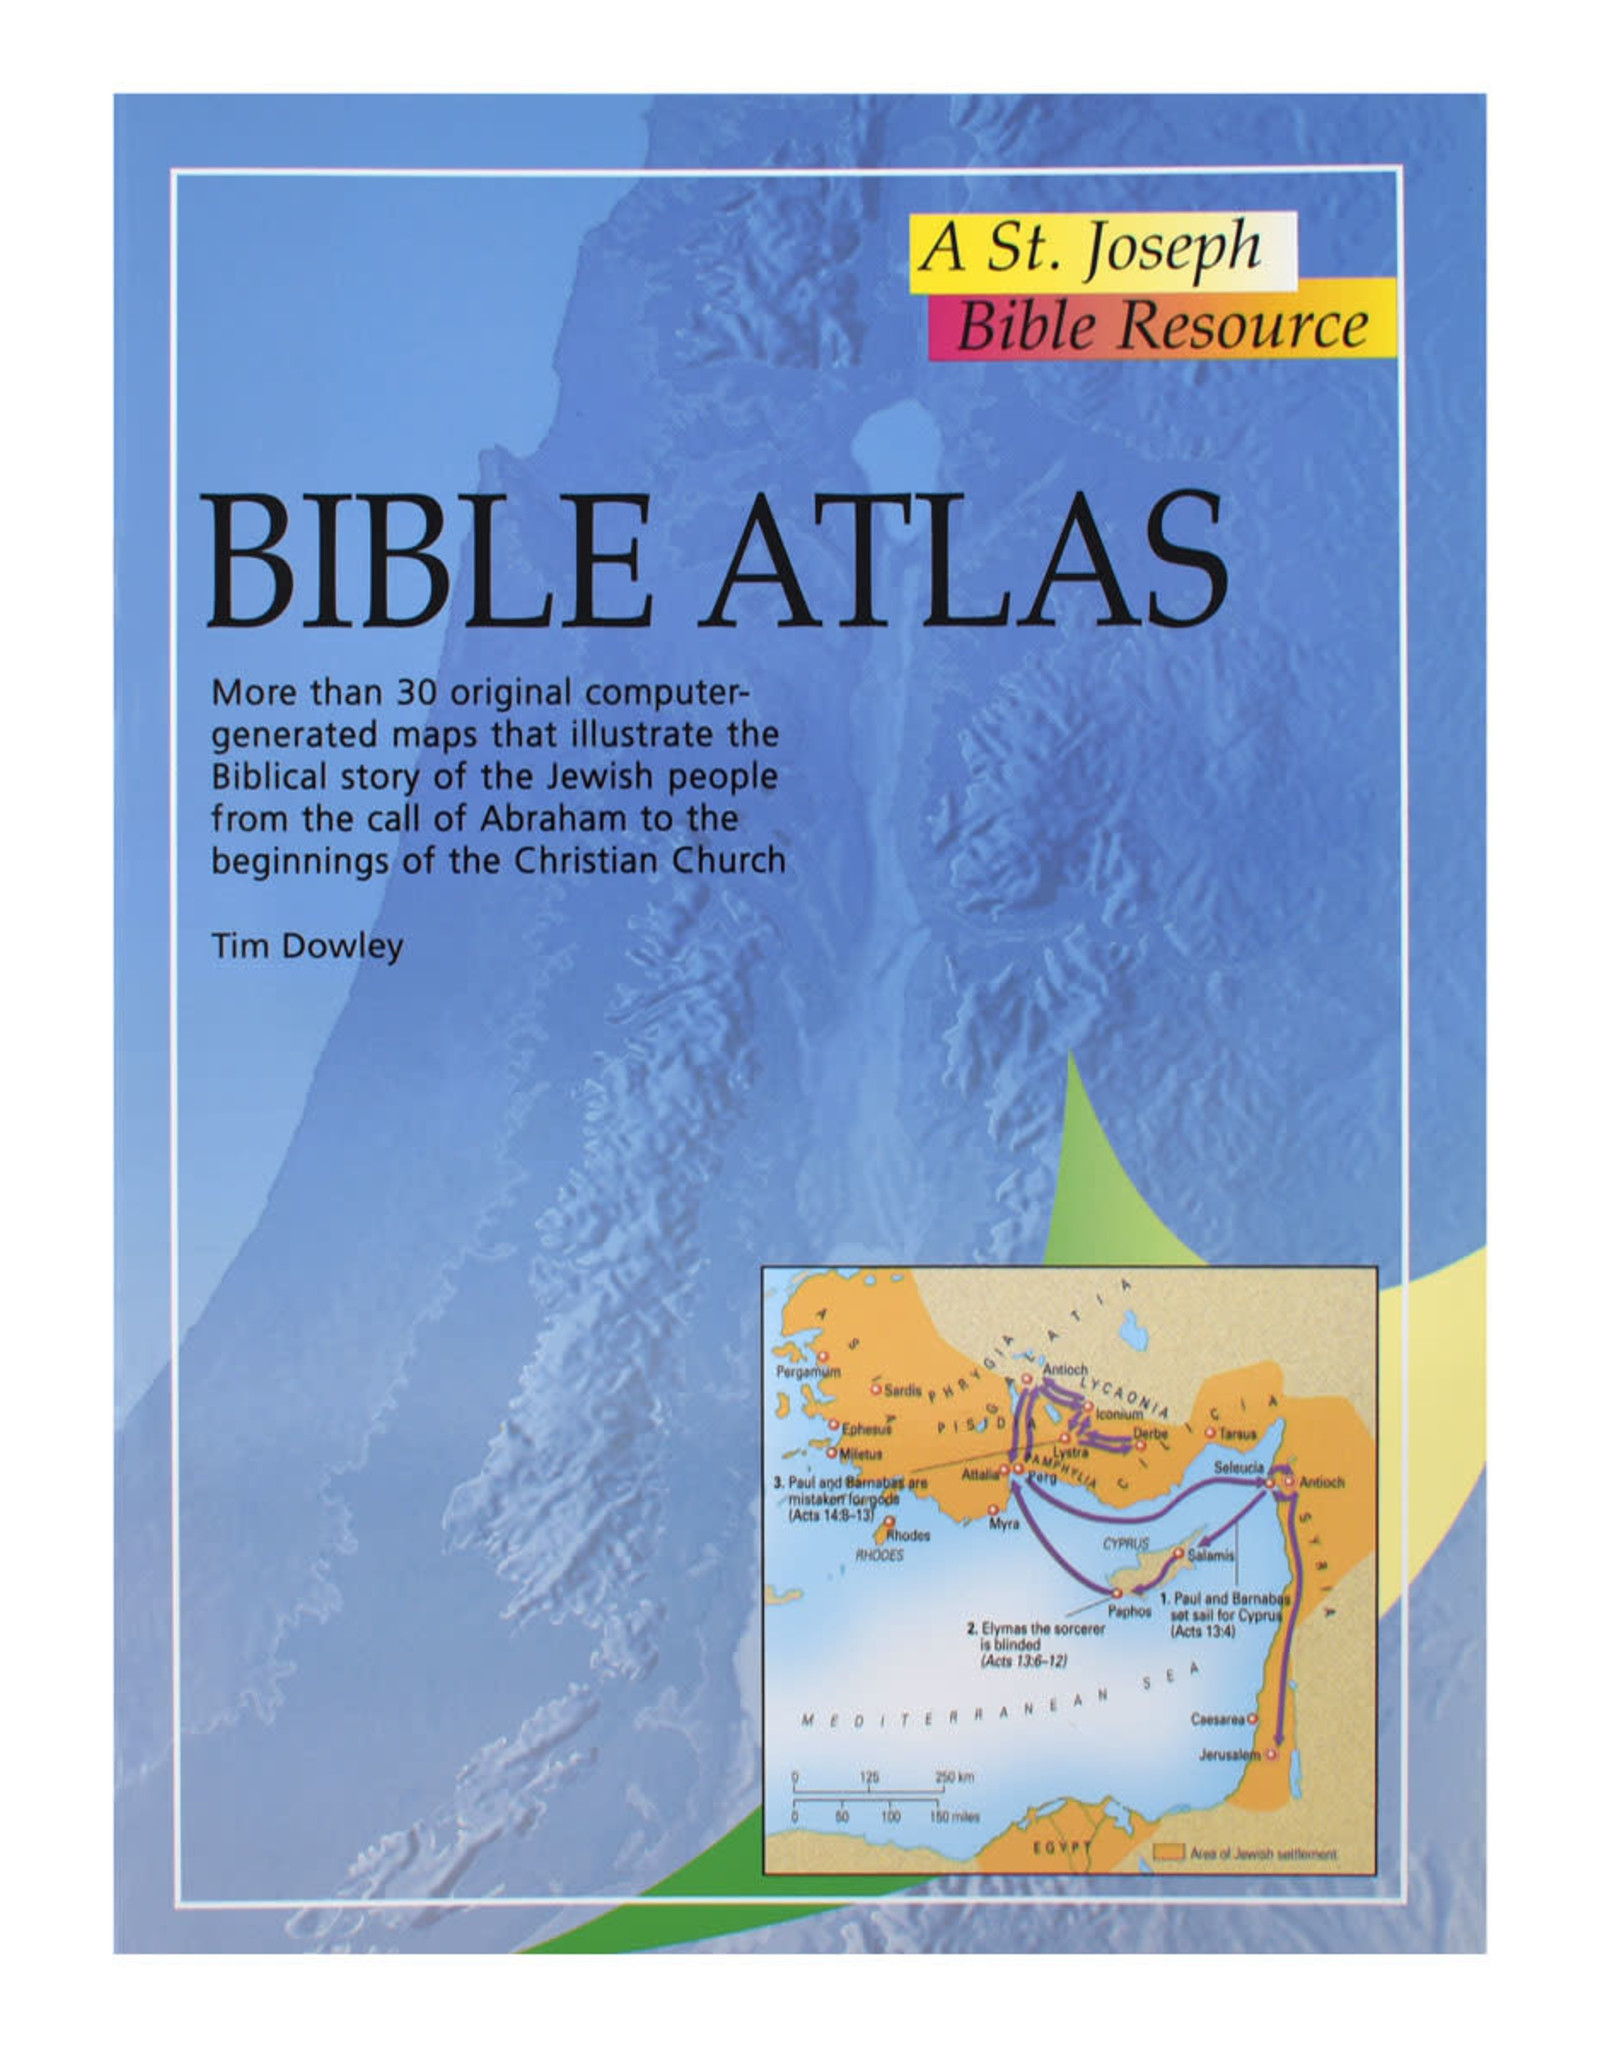 Catholic Book Publishing Bible Atlas